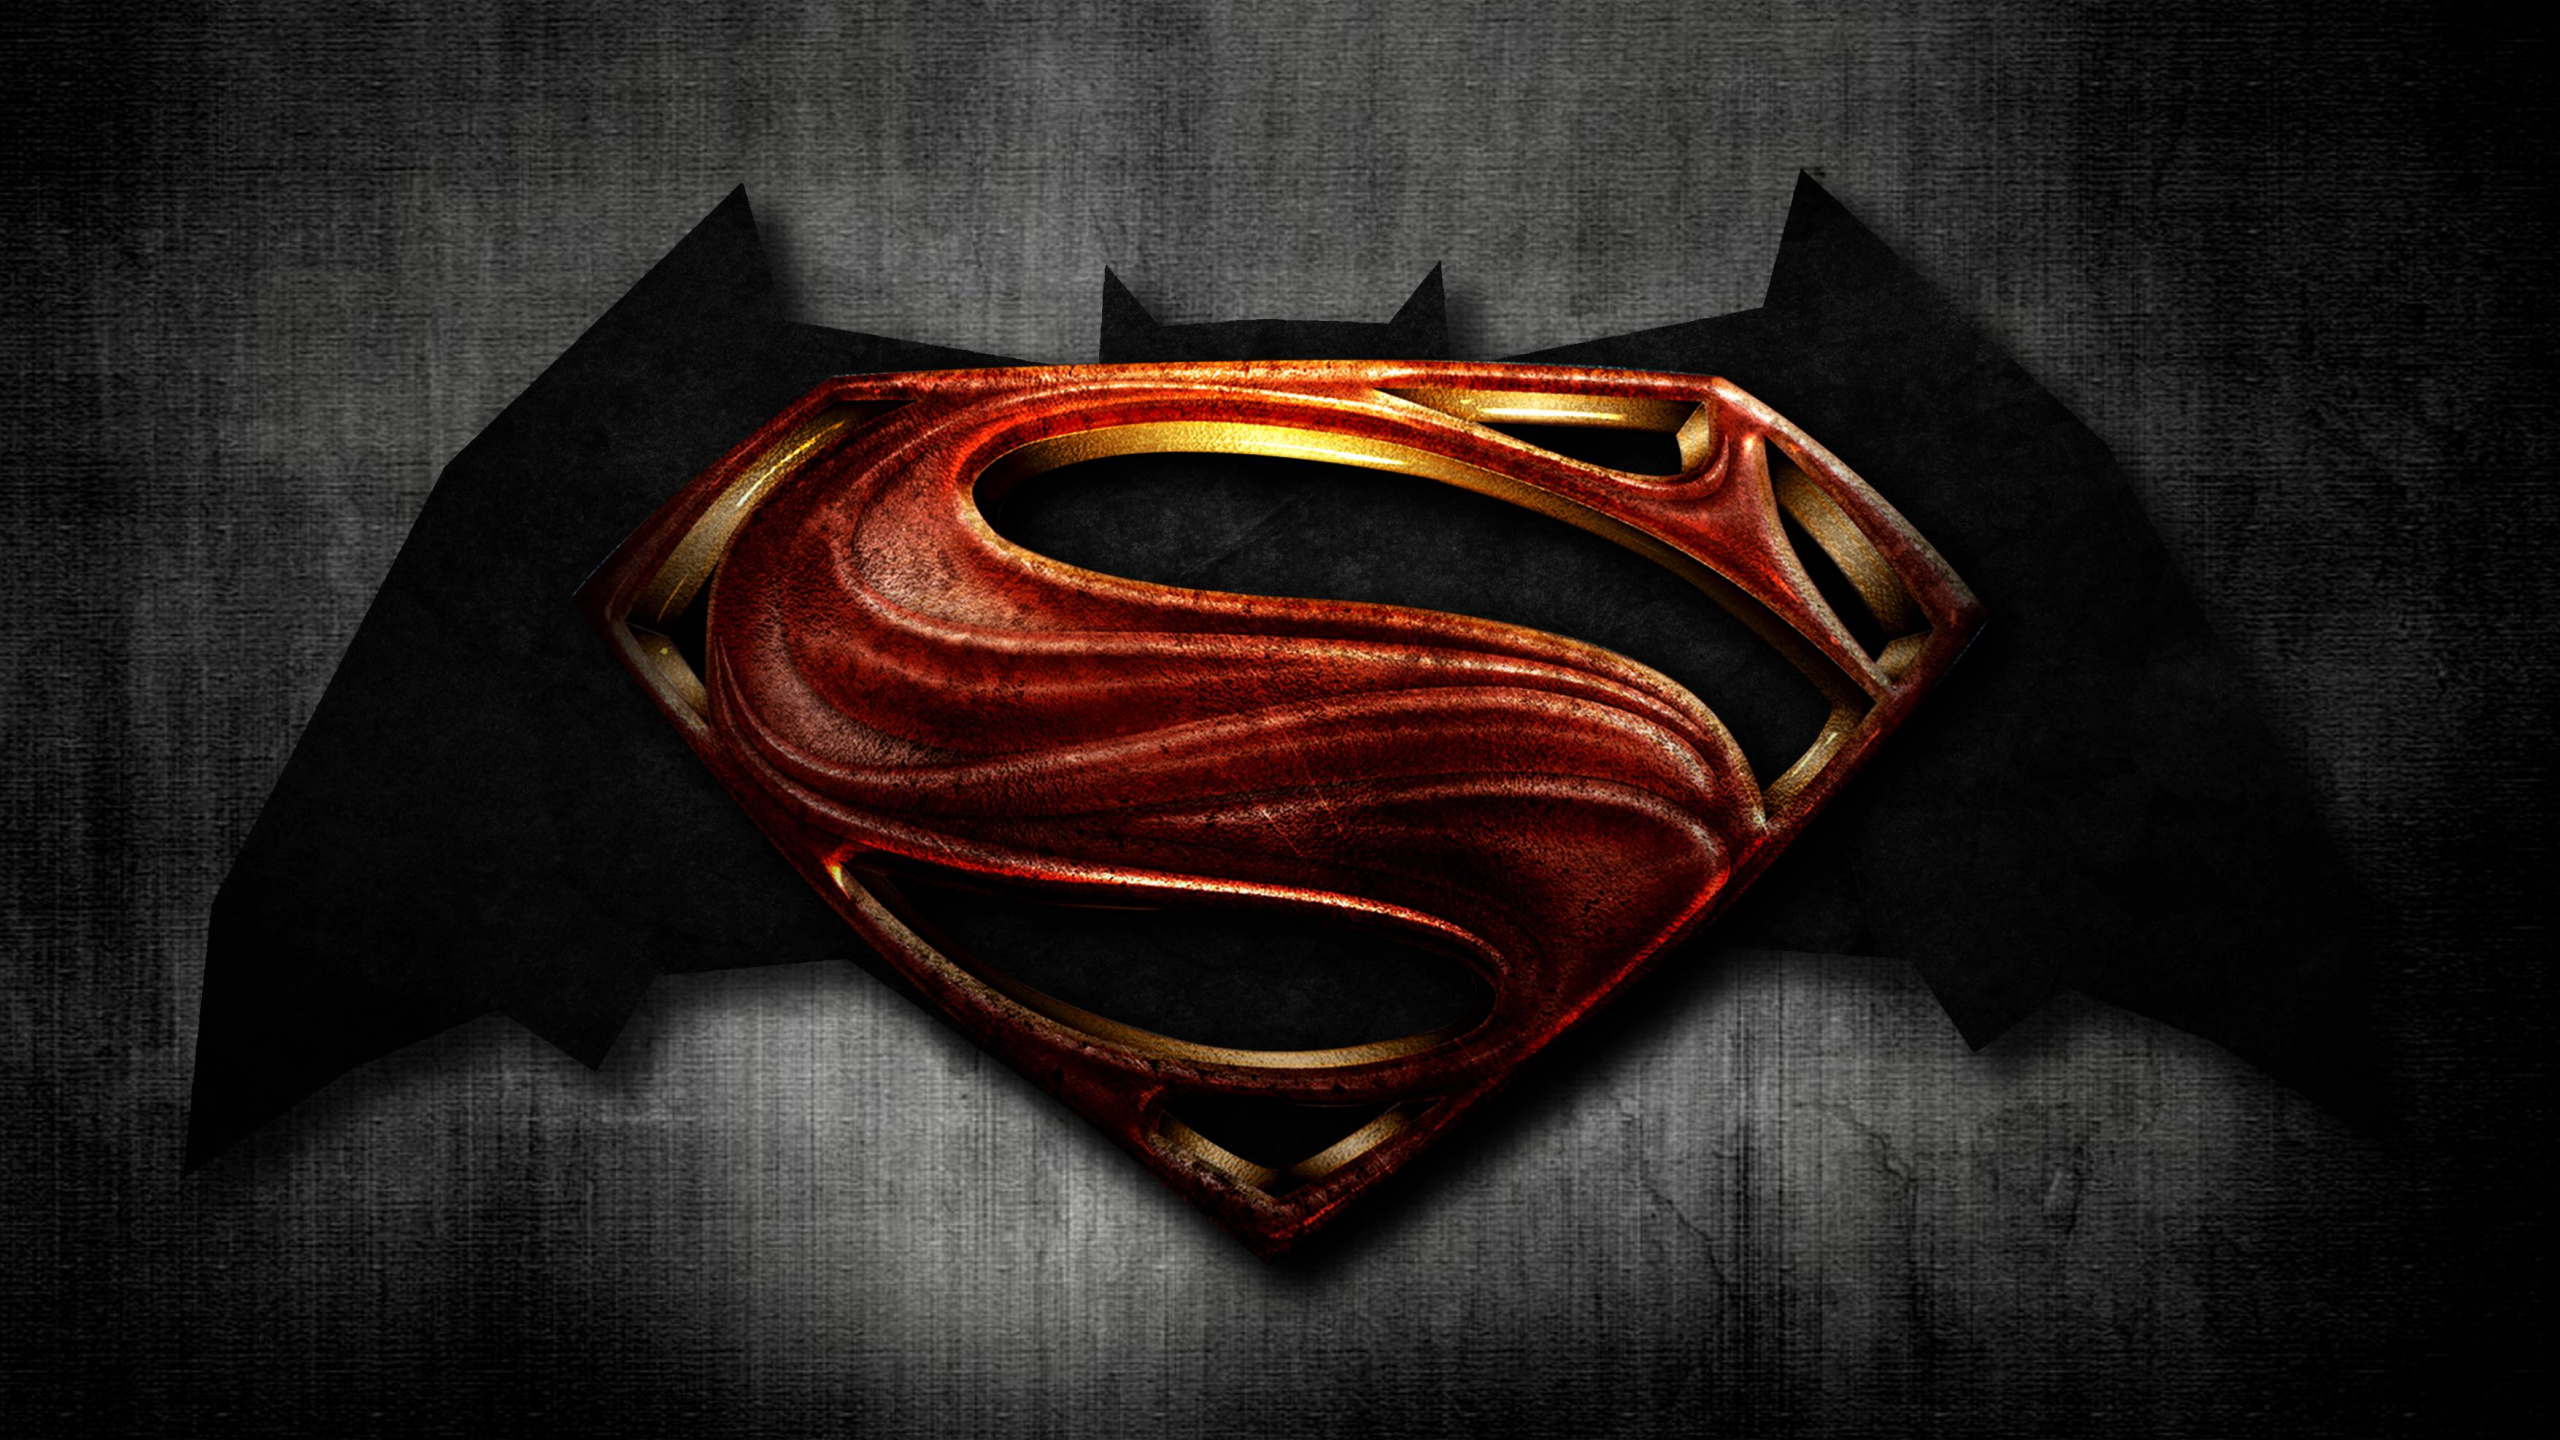 蝙蝠侠, 超人的标志, 正义联盟, 蝙蝠车, 面罩 壁纸 2560x1440 允许